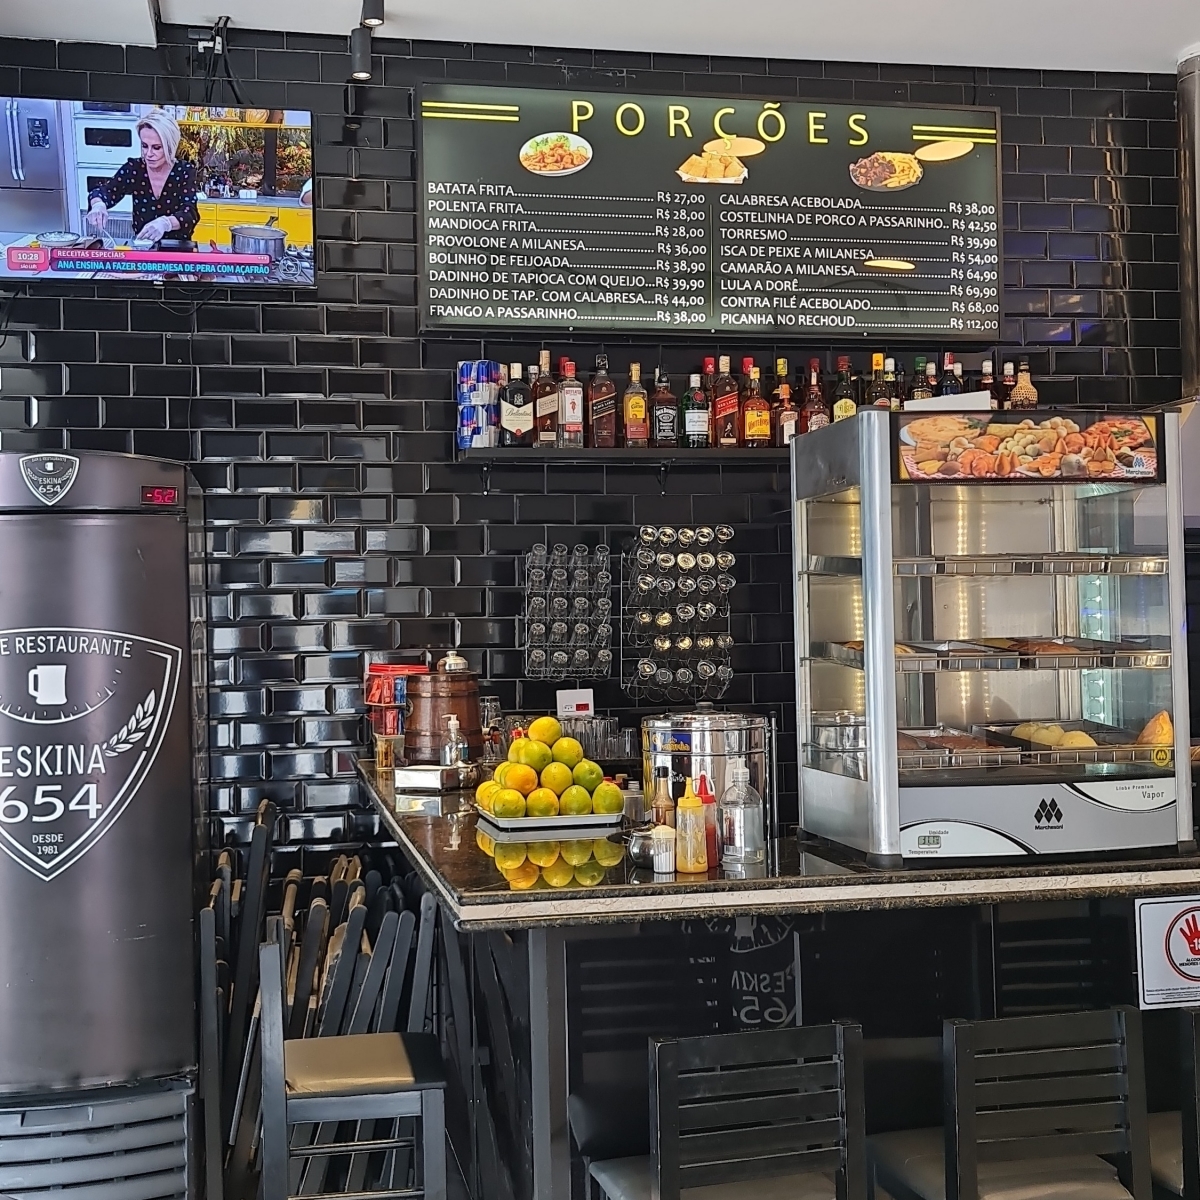 Vendo Bar e Restaurante recém inaugurado na região da Mooca SP - Valor R$ 400.000